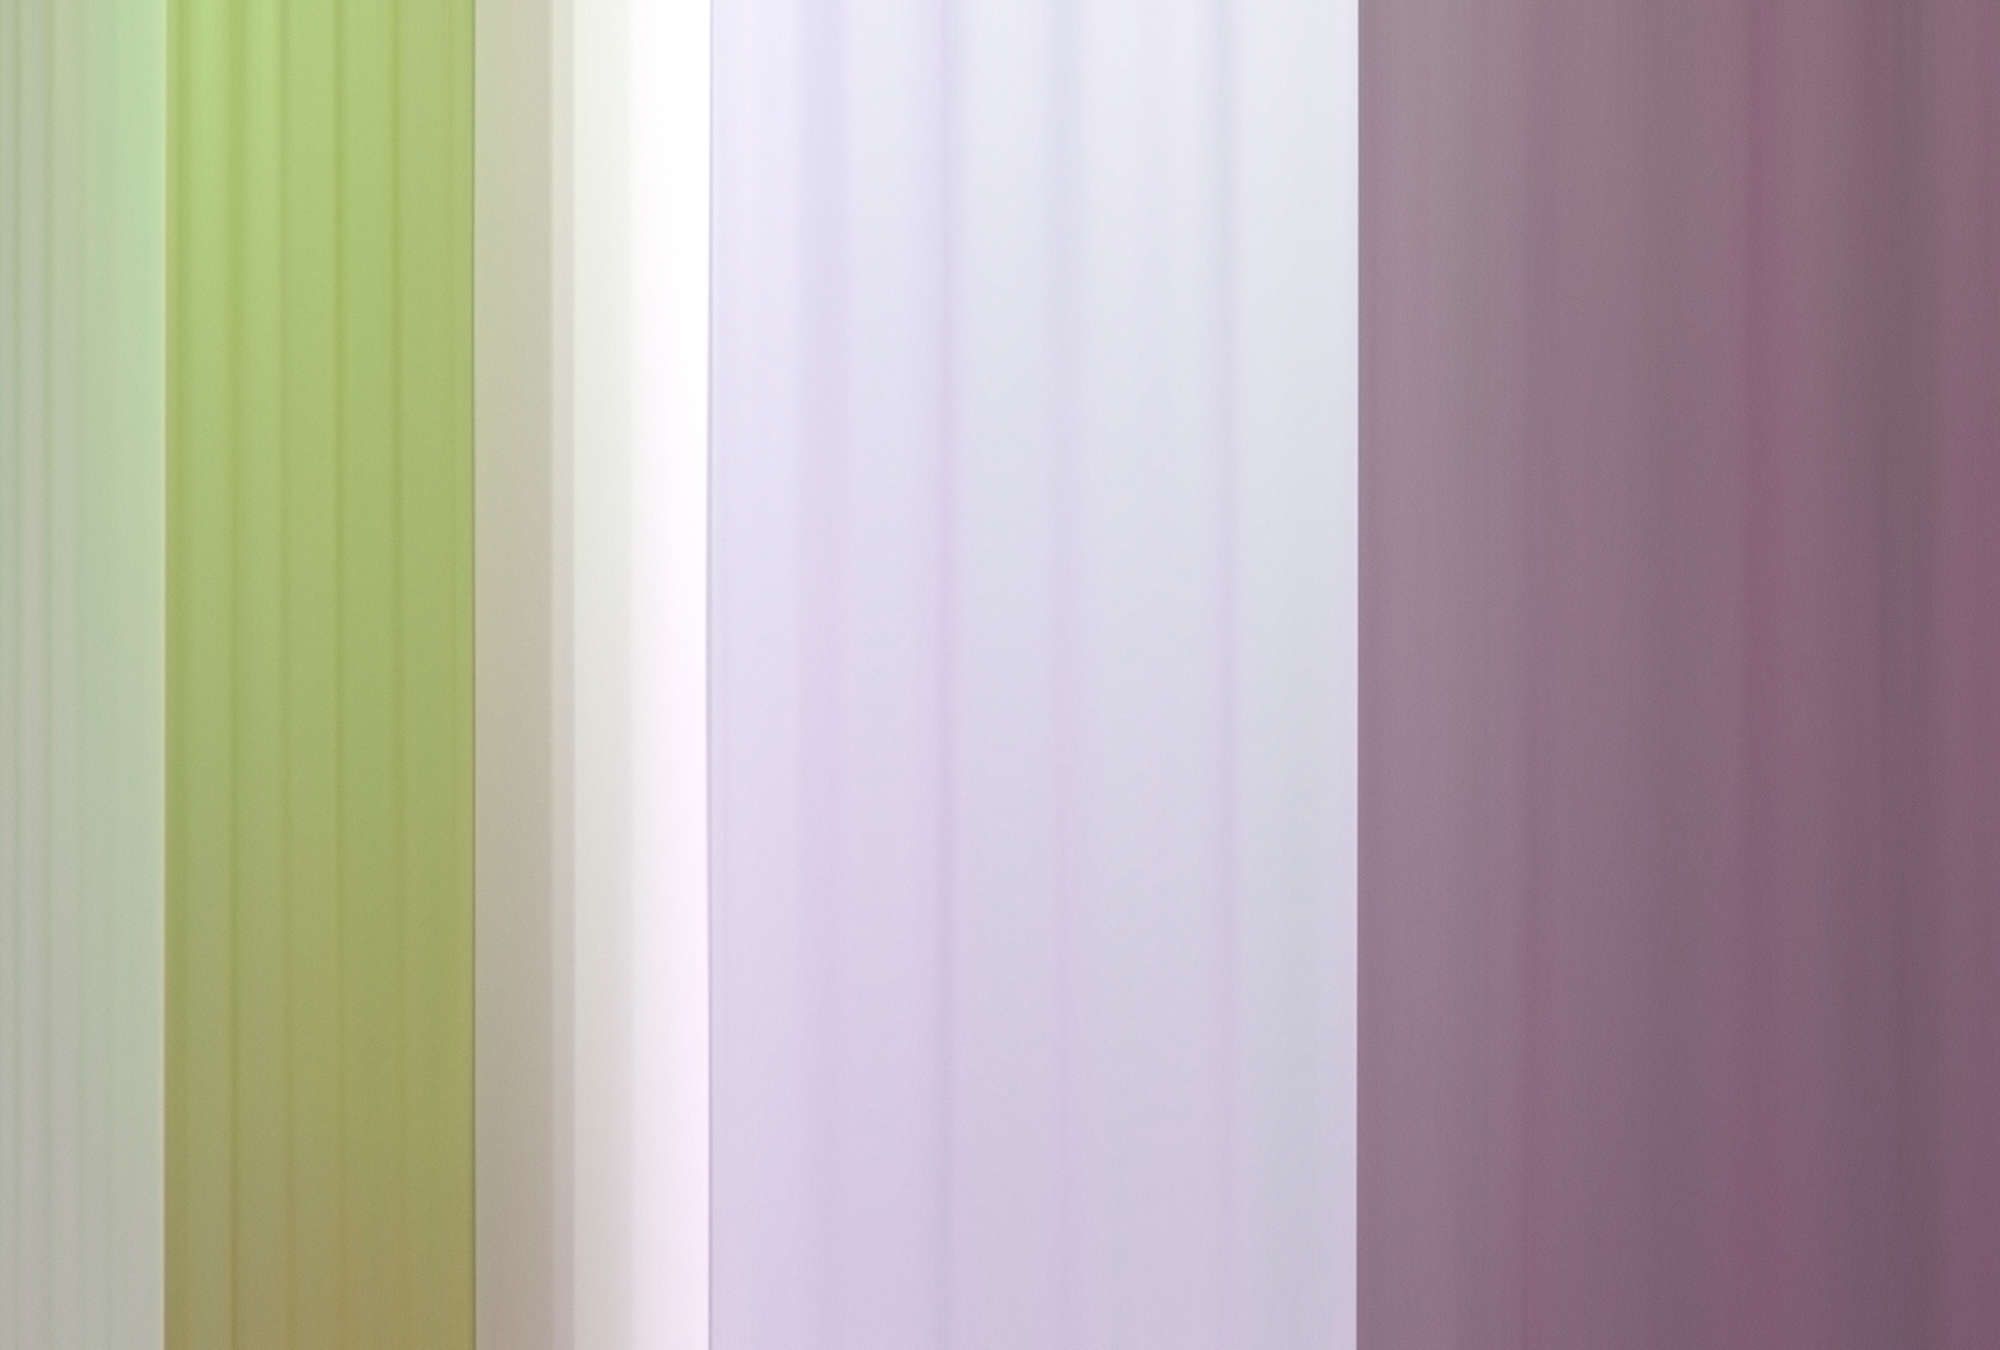             Fototapete »co-colores 3« - Farbverlauf mit Streifen – Grün, Flieder, Lila | Glattes, leicht glänzendes Premiumvlies
        